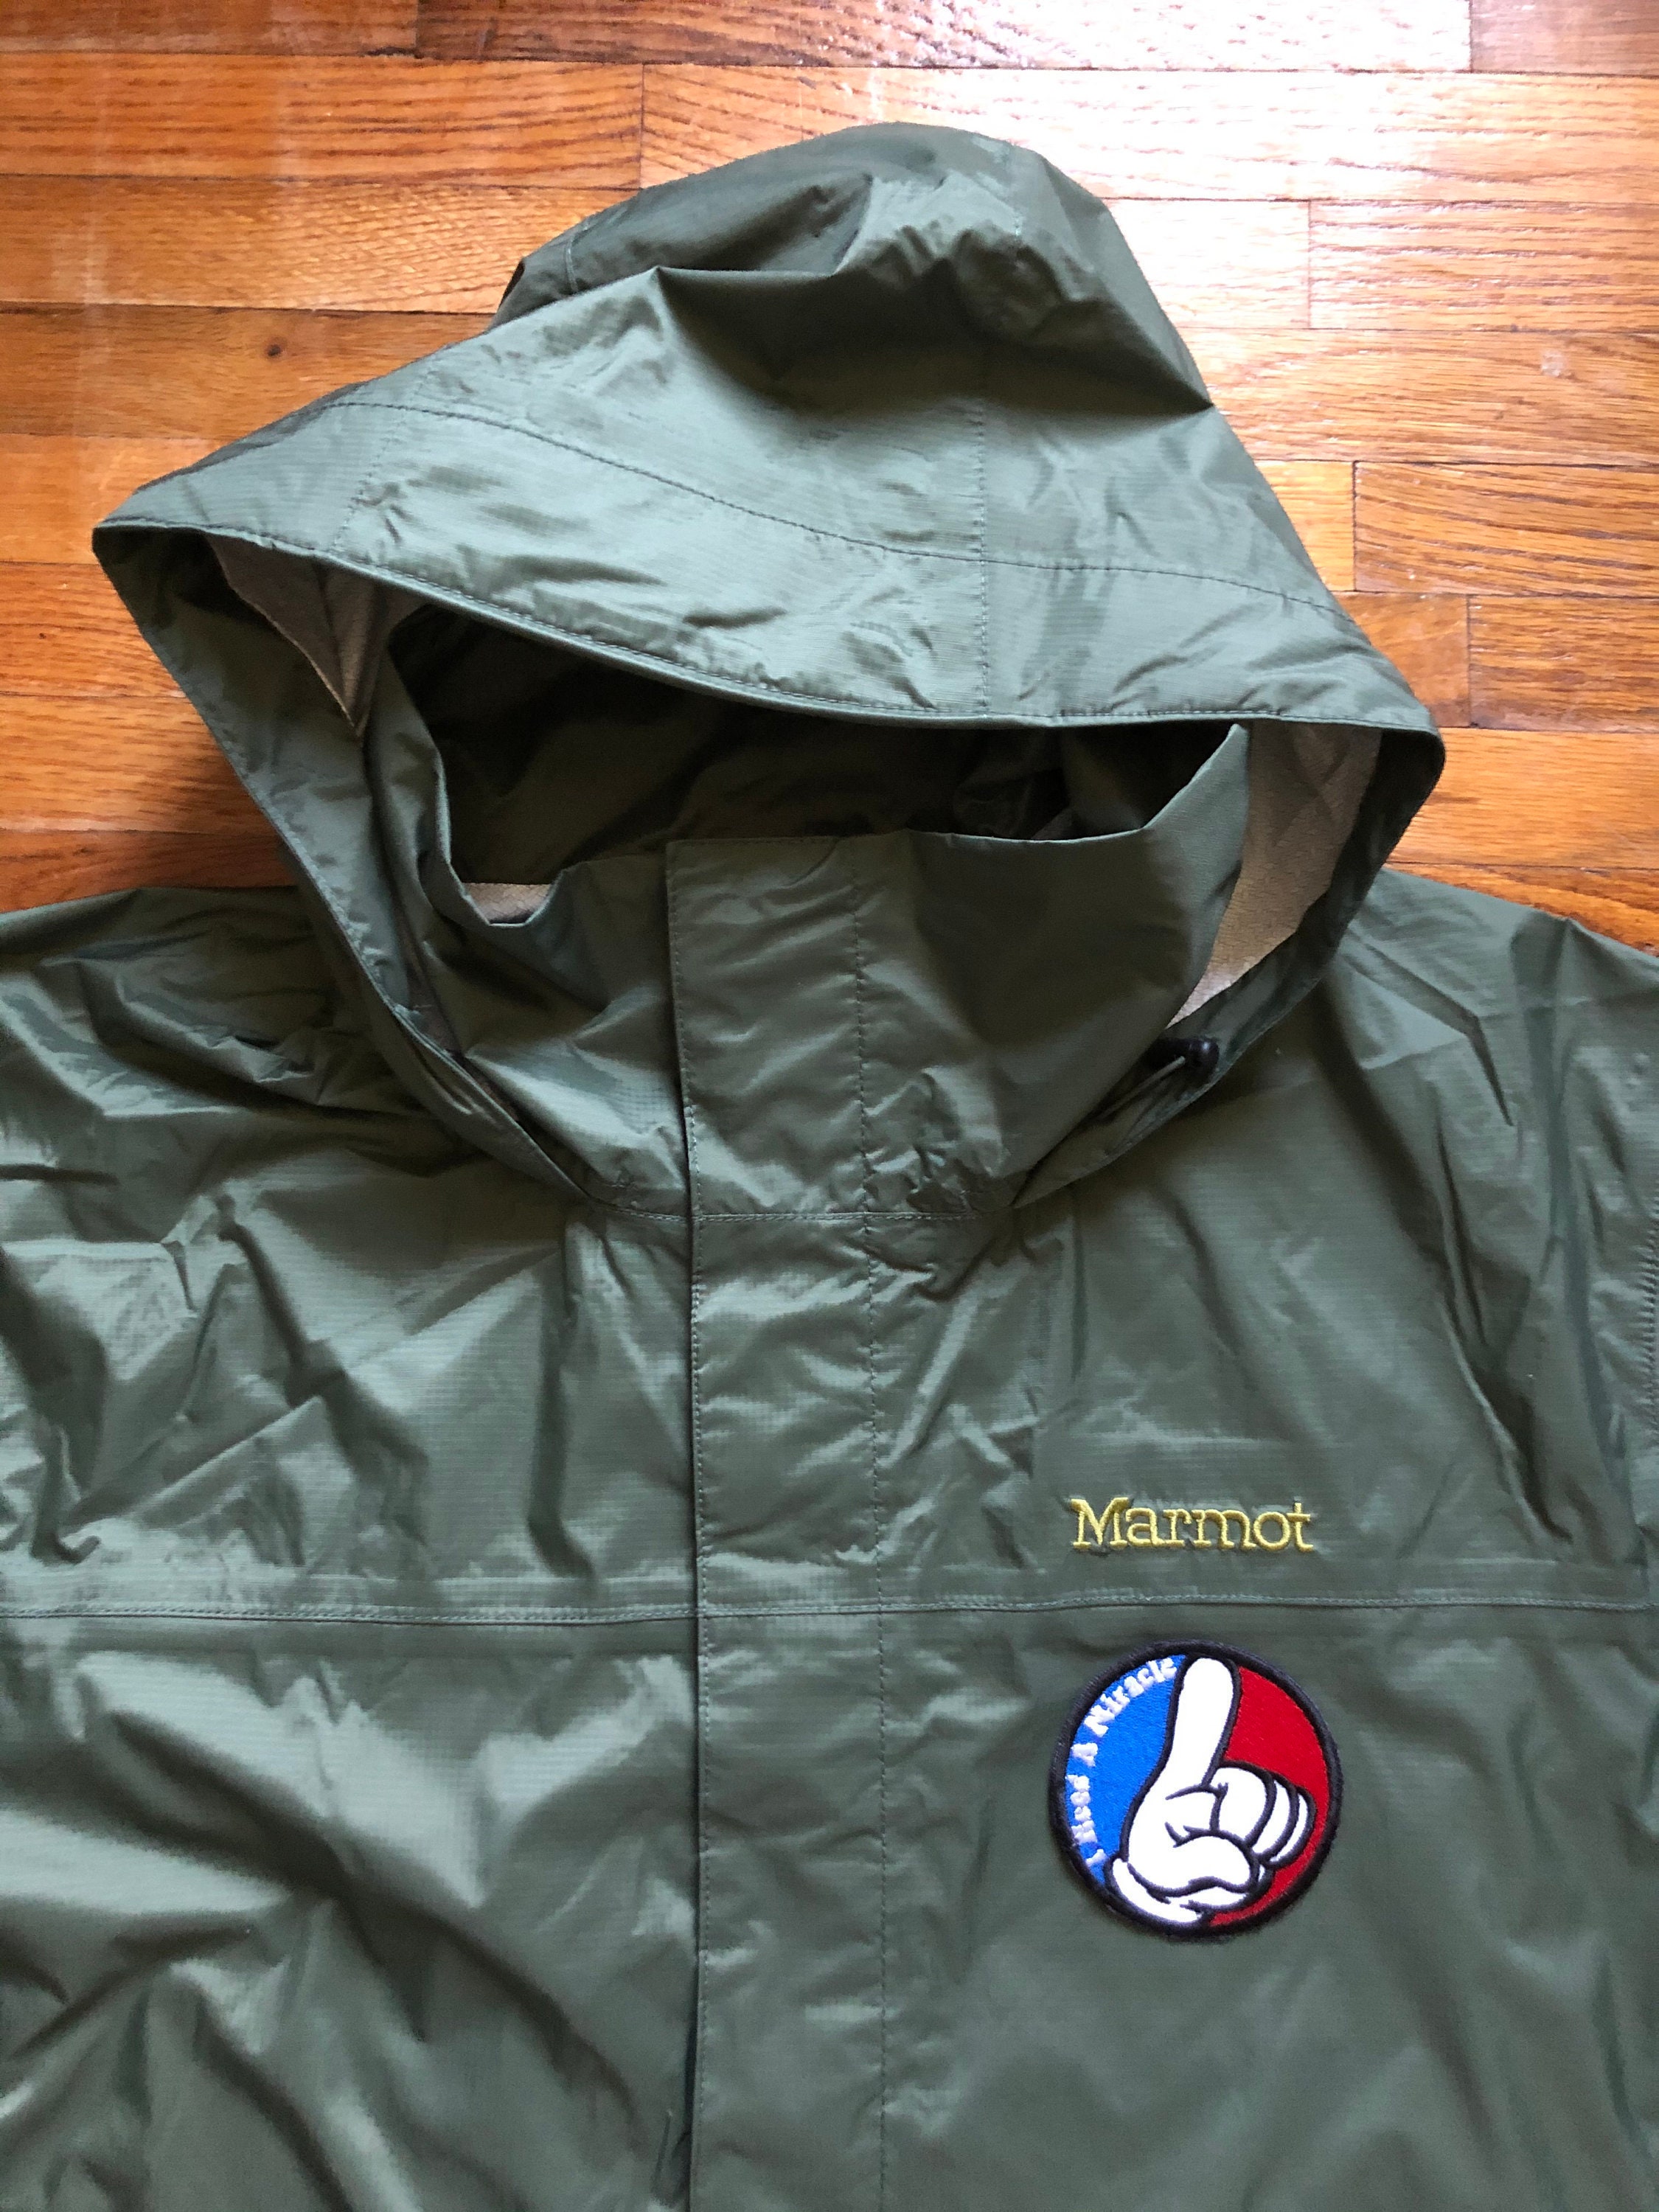 Marmot Rain Jacket I Need a Miracle . think deadagonia. Very NICE!